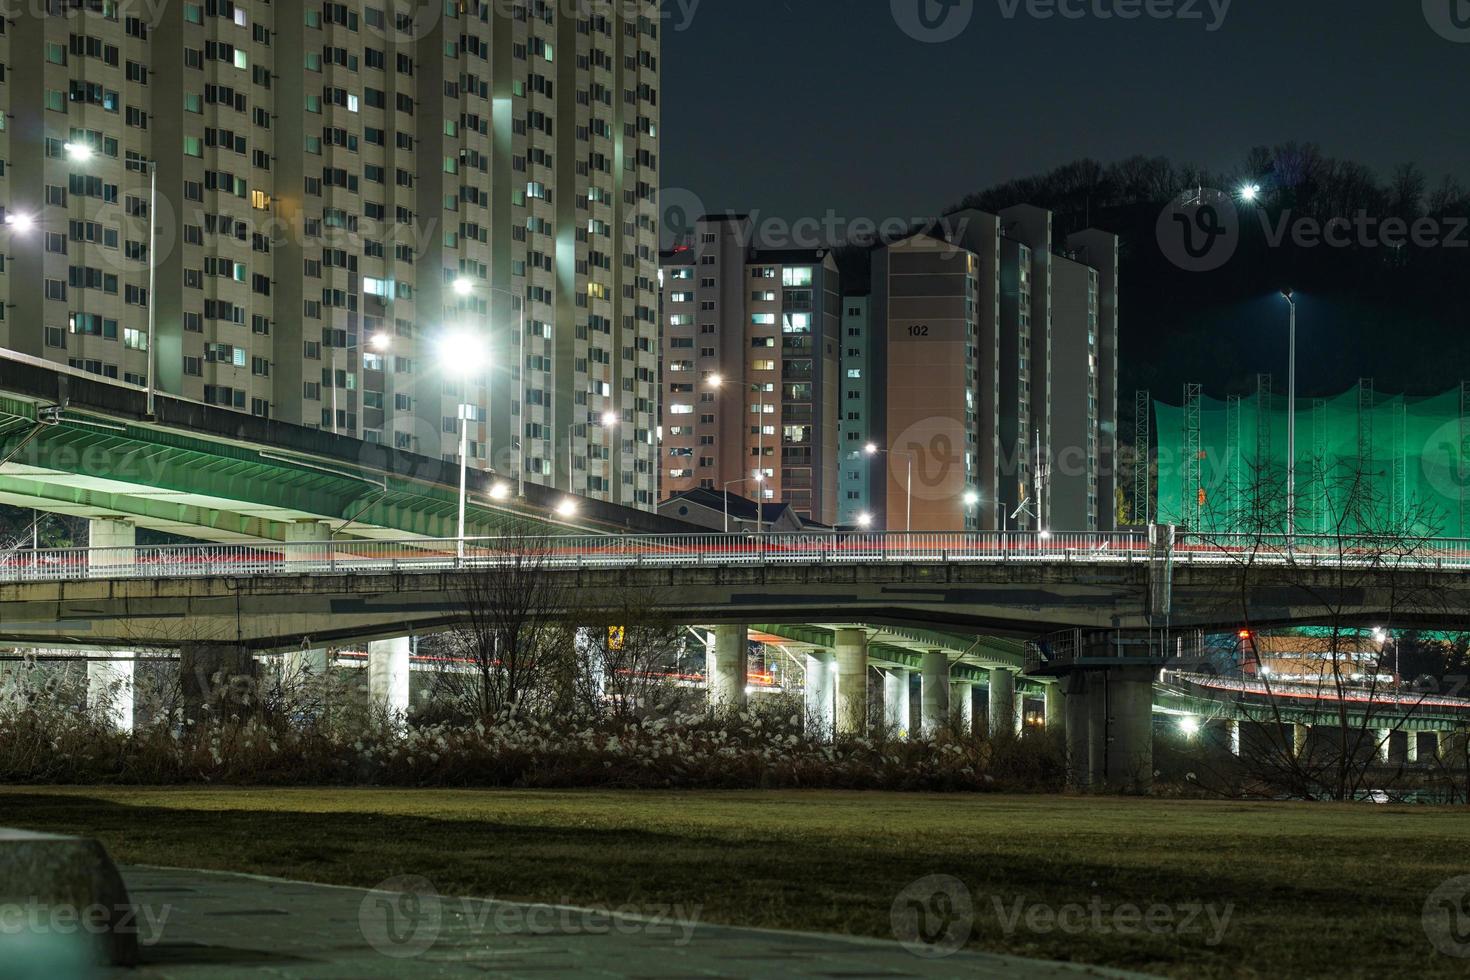 vue nocturne d'anyangcheon, gyeonggi-do, corée photo